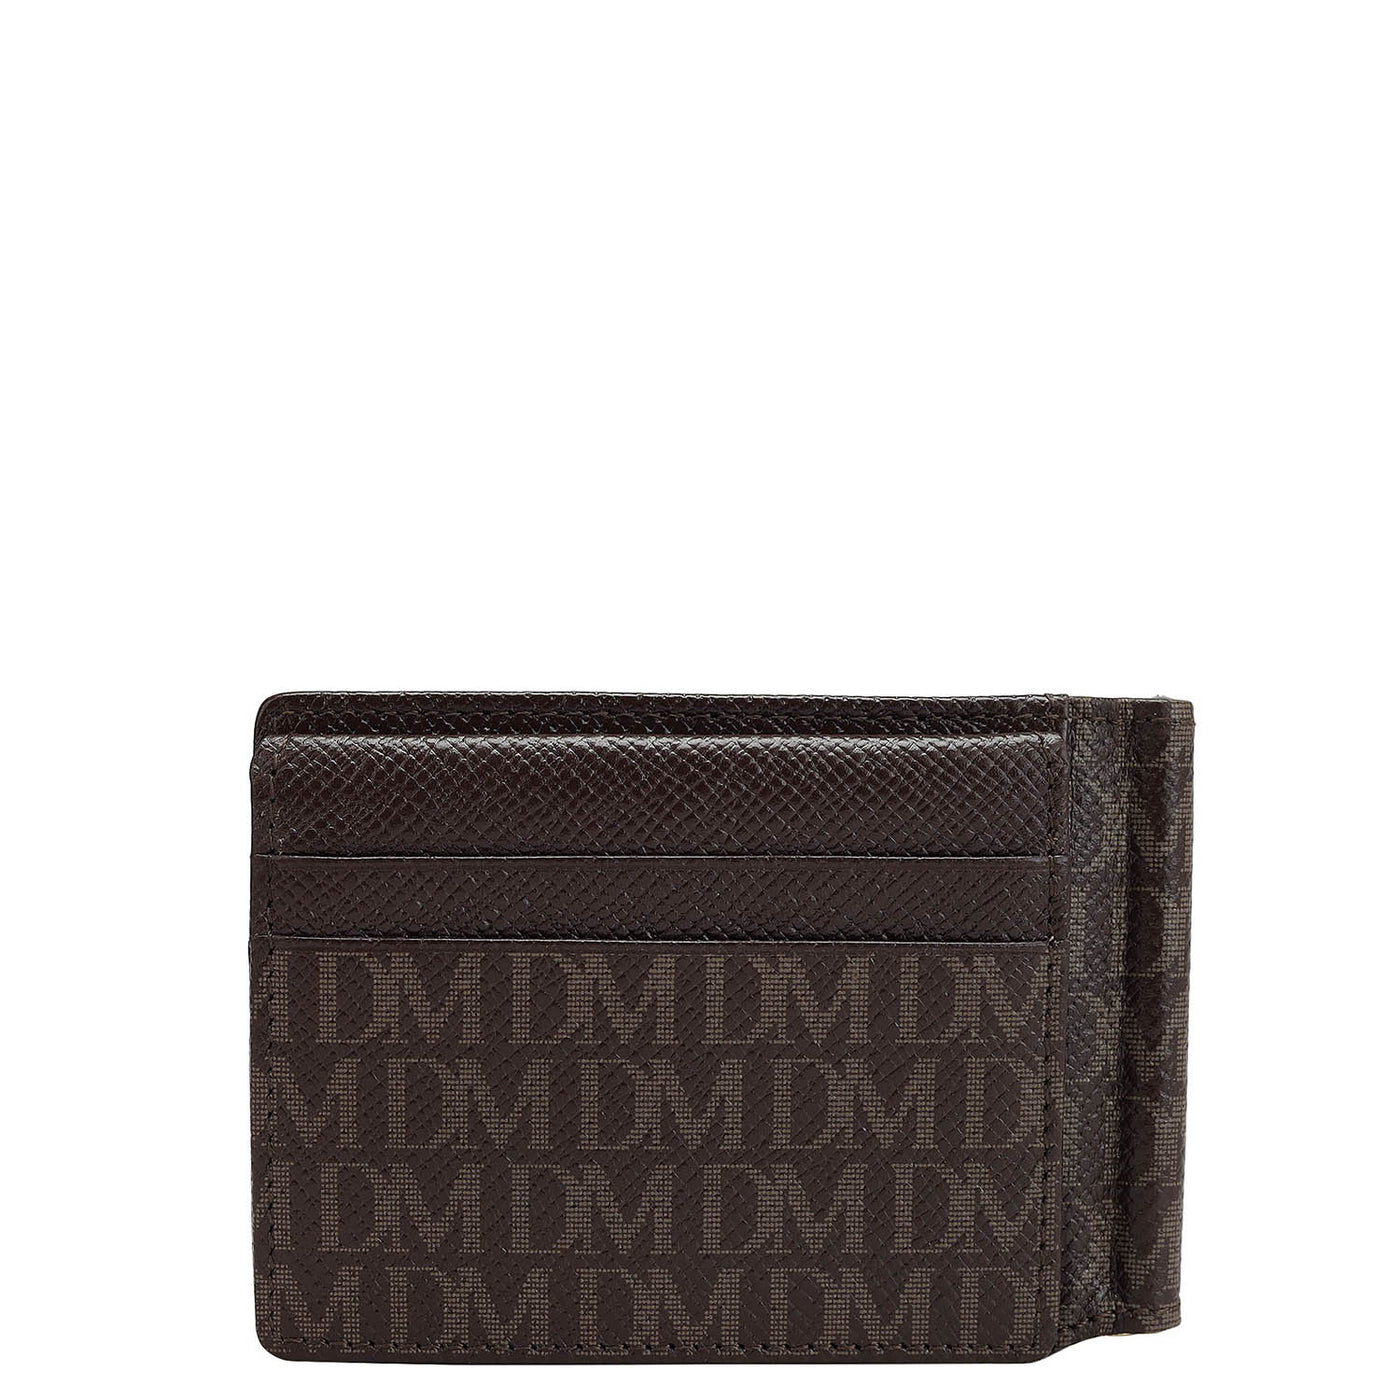 Monogram Leather Money Clip - Chocolate